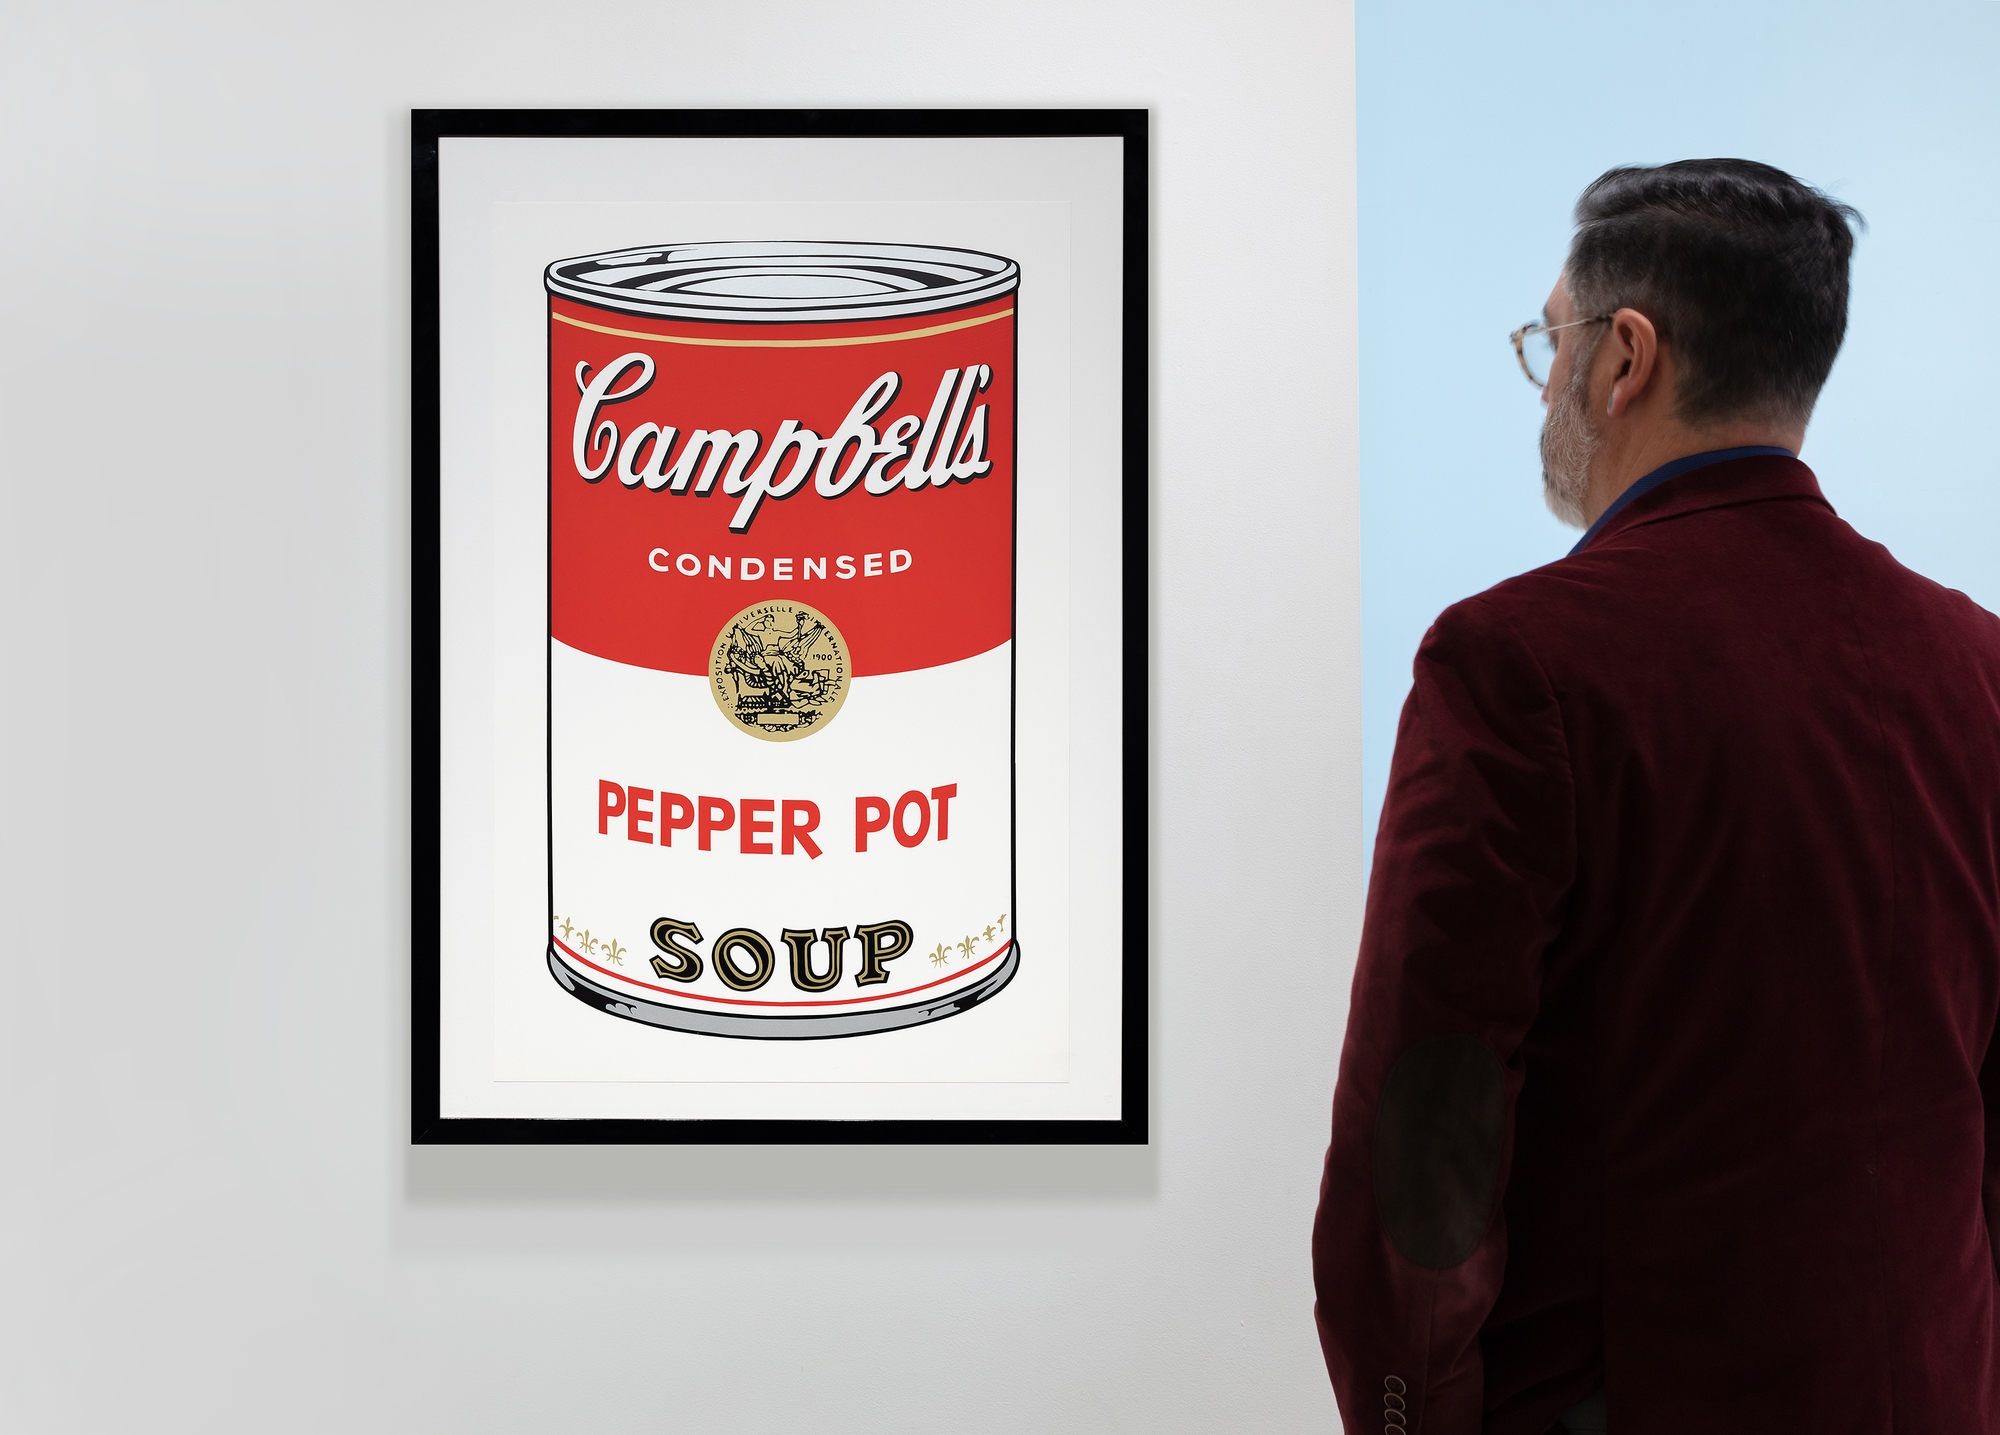 La serie de latas de sopa Campbell de Andy Warhol marca un momento crucial en su carrera y en el movimiento del arte pop. La serie, compuesta por 32 lienzos, cada uno con un sabor diferente, revolucionó el mundo del arte al elevar los bienes de consumo cotidianos y mundanos a la categoría de arte elevado. La serigrafía Pepper Pot, de 1968, emplea su característico estilo de colores vivos y planos e imágenes repetidas, característico de la producción en masa y la cultura de consumo. La serigrafía, una técnica comercial, concuerda con el interés de Warhol por desdibujar los límites entre el arte elevado y el arte comercial, desafiando los valores y percepciones artísticos.